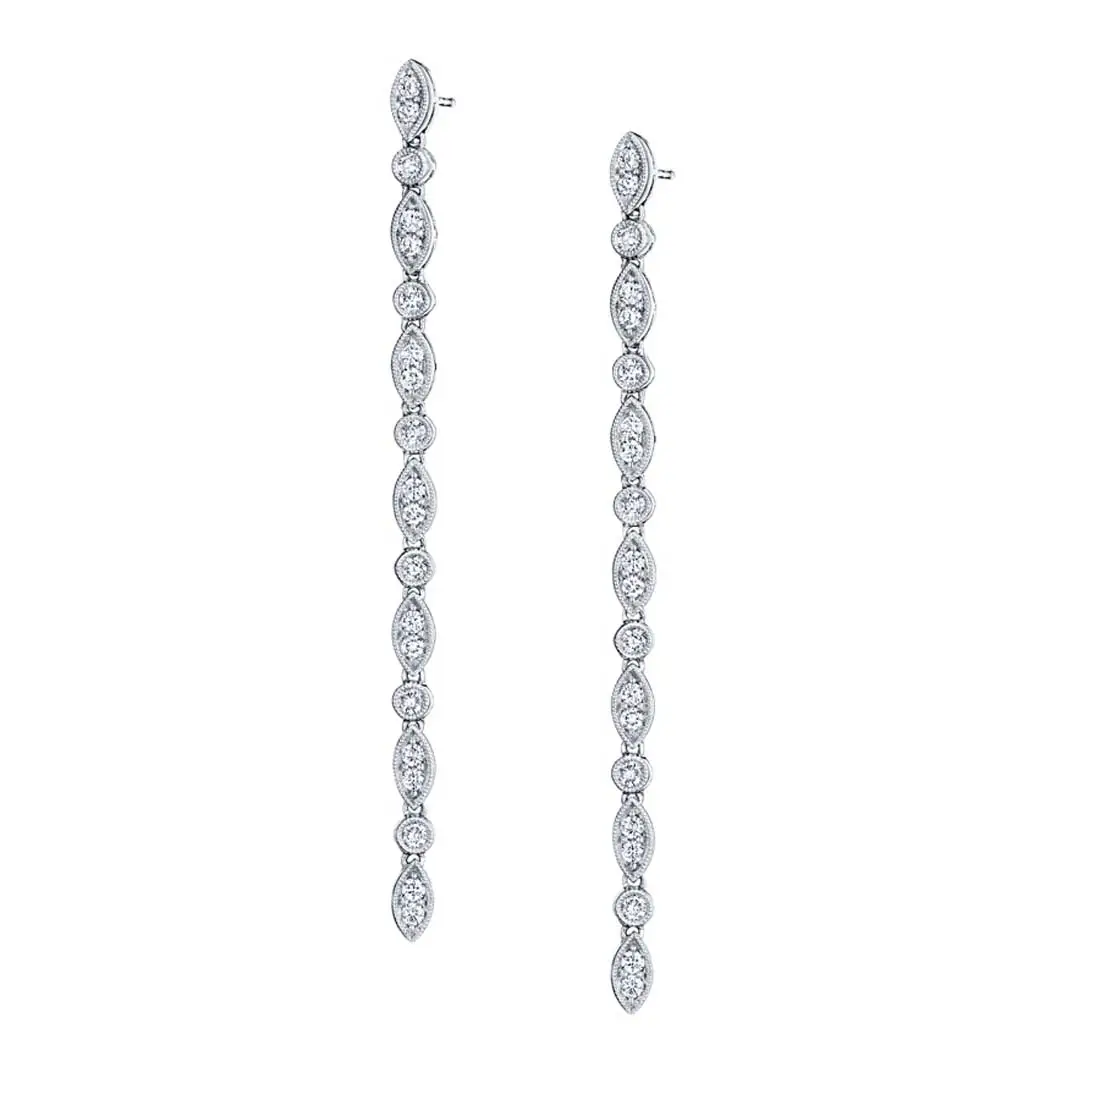 Vintage Inspired Diamond Drop Earrings